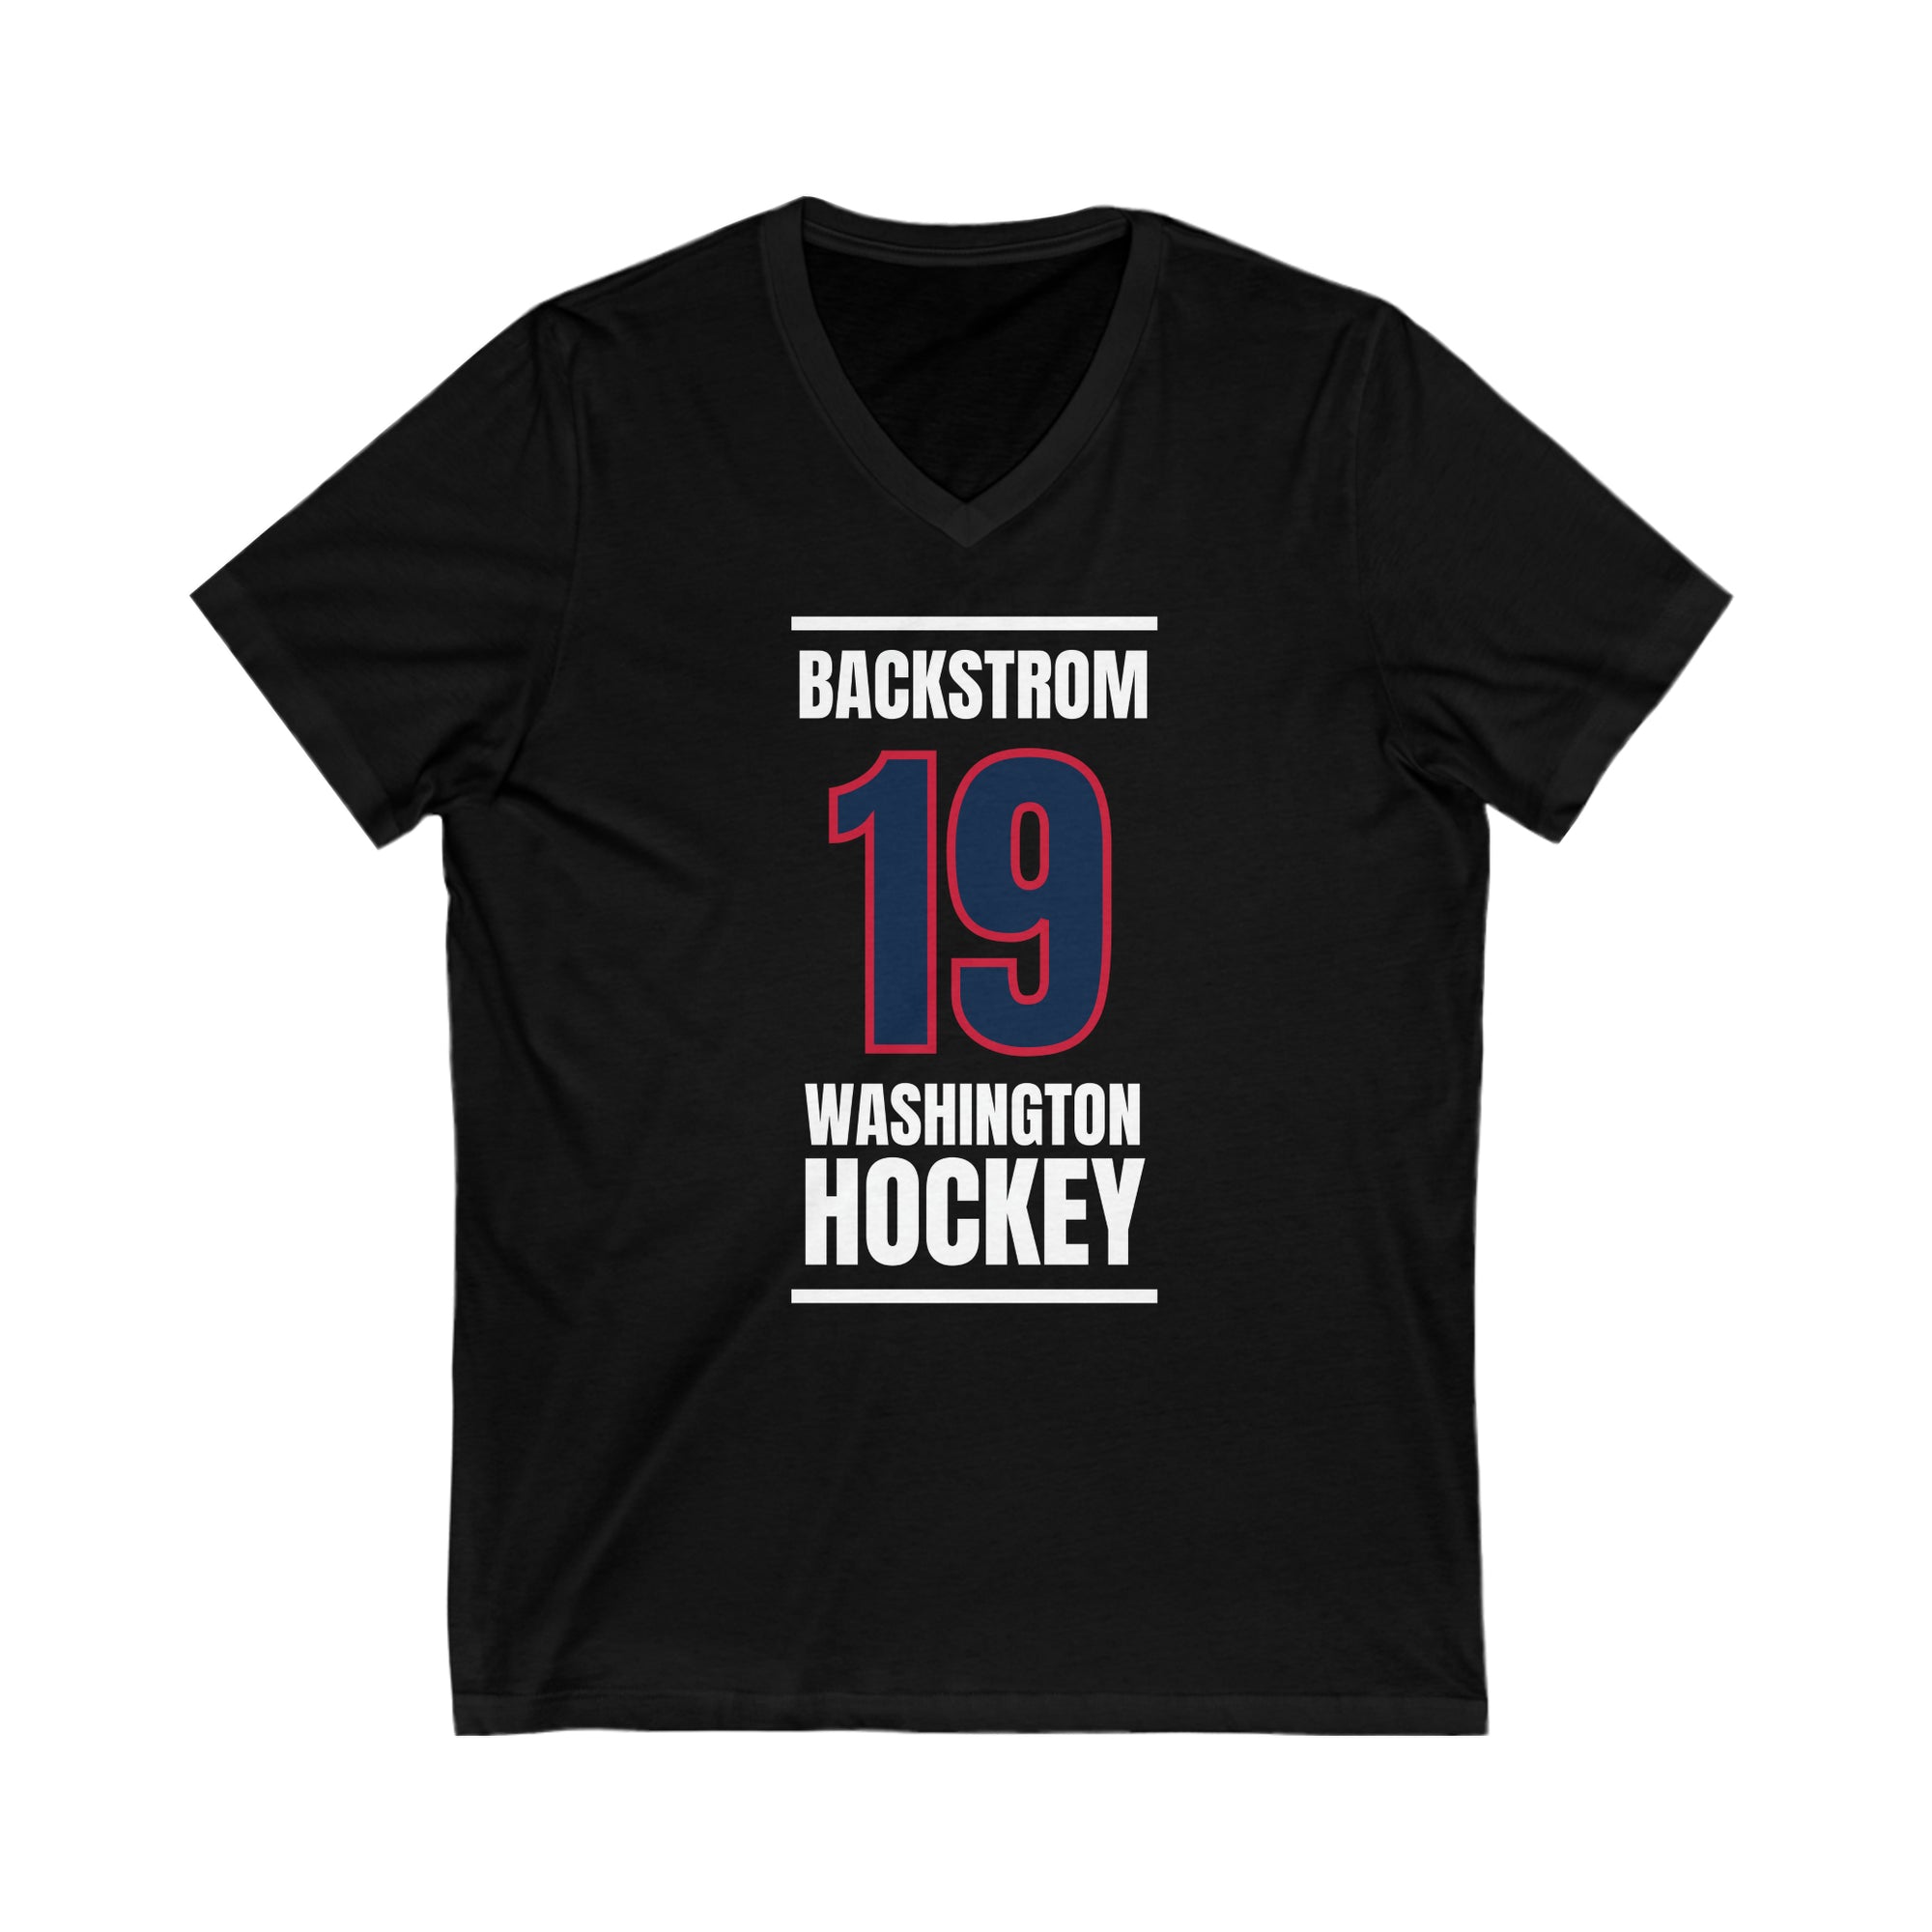 Backstrom 19 Washington Hockey Navy Vertical Design Unisex V-Neck Tee